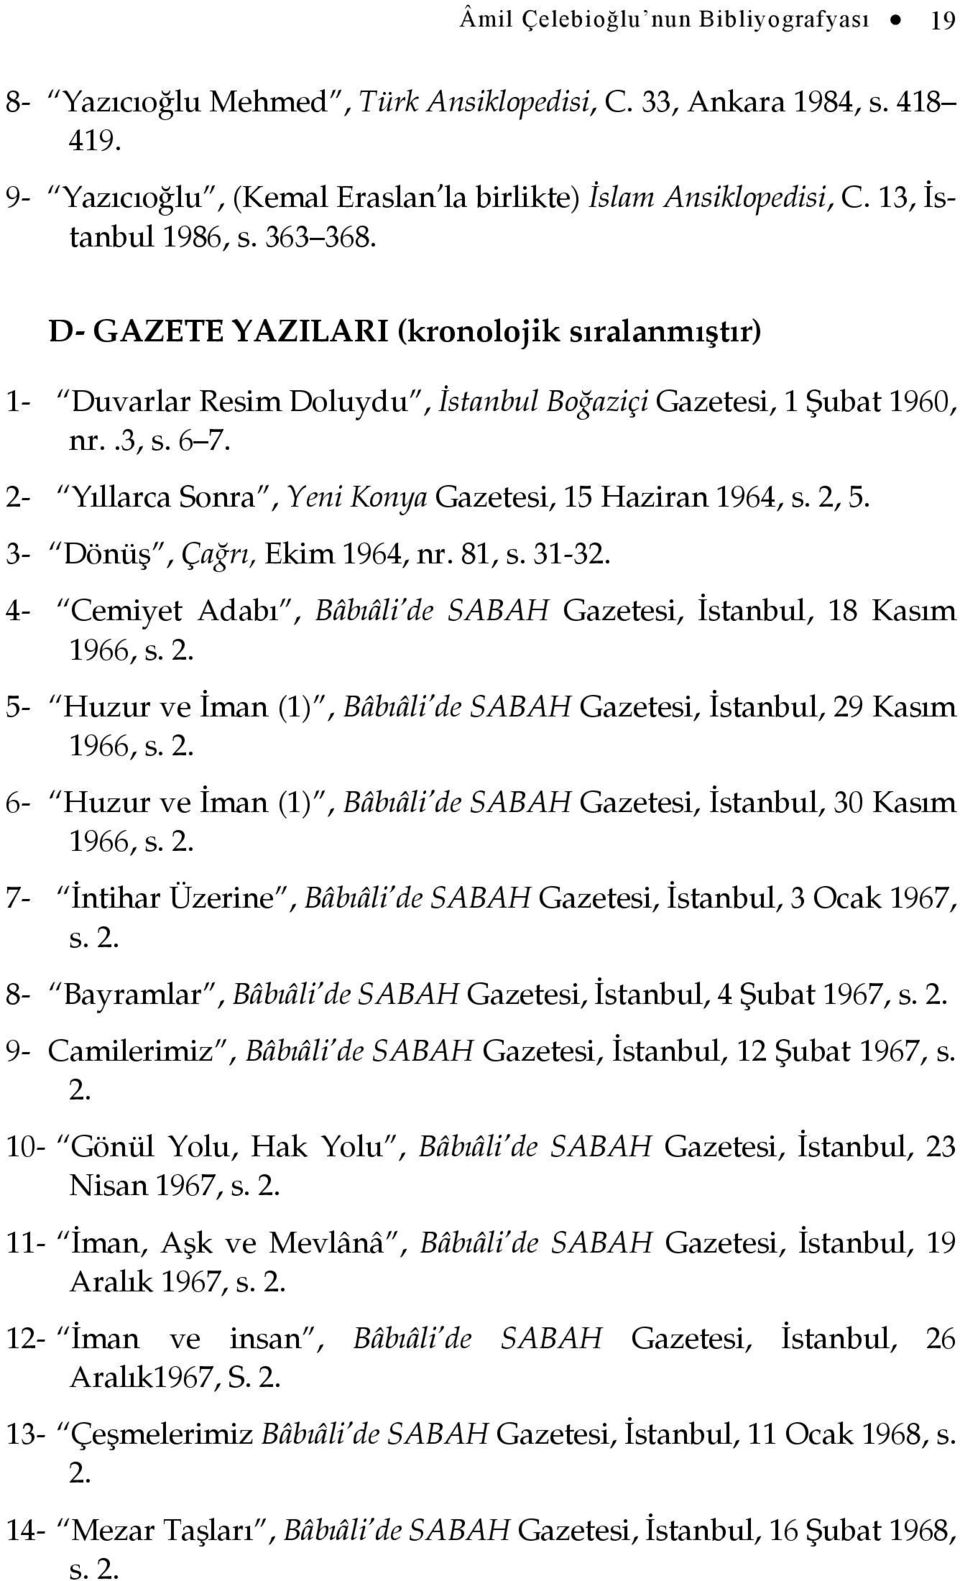 2- Yıllarca Sonra, Yeni Konya Gazetesi, 15 Haziran 1964, s. 2, 5. 3- Dönüş, Çağrı, Ekim 1964, nr. 81, s. 31-32. 4- Cemiyet Adabı, Bâbıâli de SABAH Gazetesi, İstanbul, 18 Kasım 1966, s. 2. 5- Huzur ve İman (1), Bâbıâli de SABAH Gazetesi, İstanbul, 29 Kasım 1966, s.